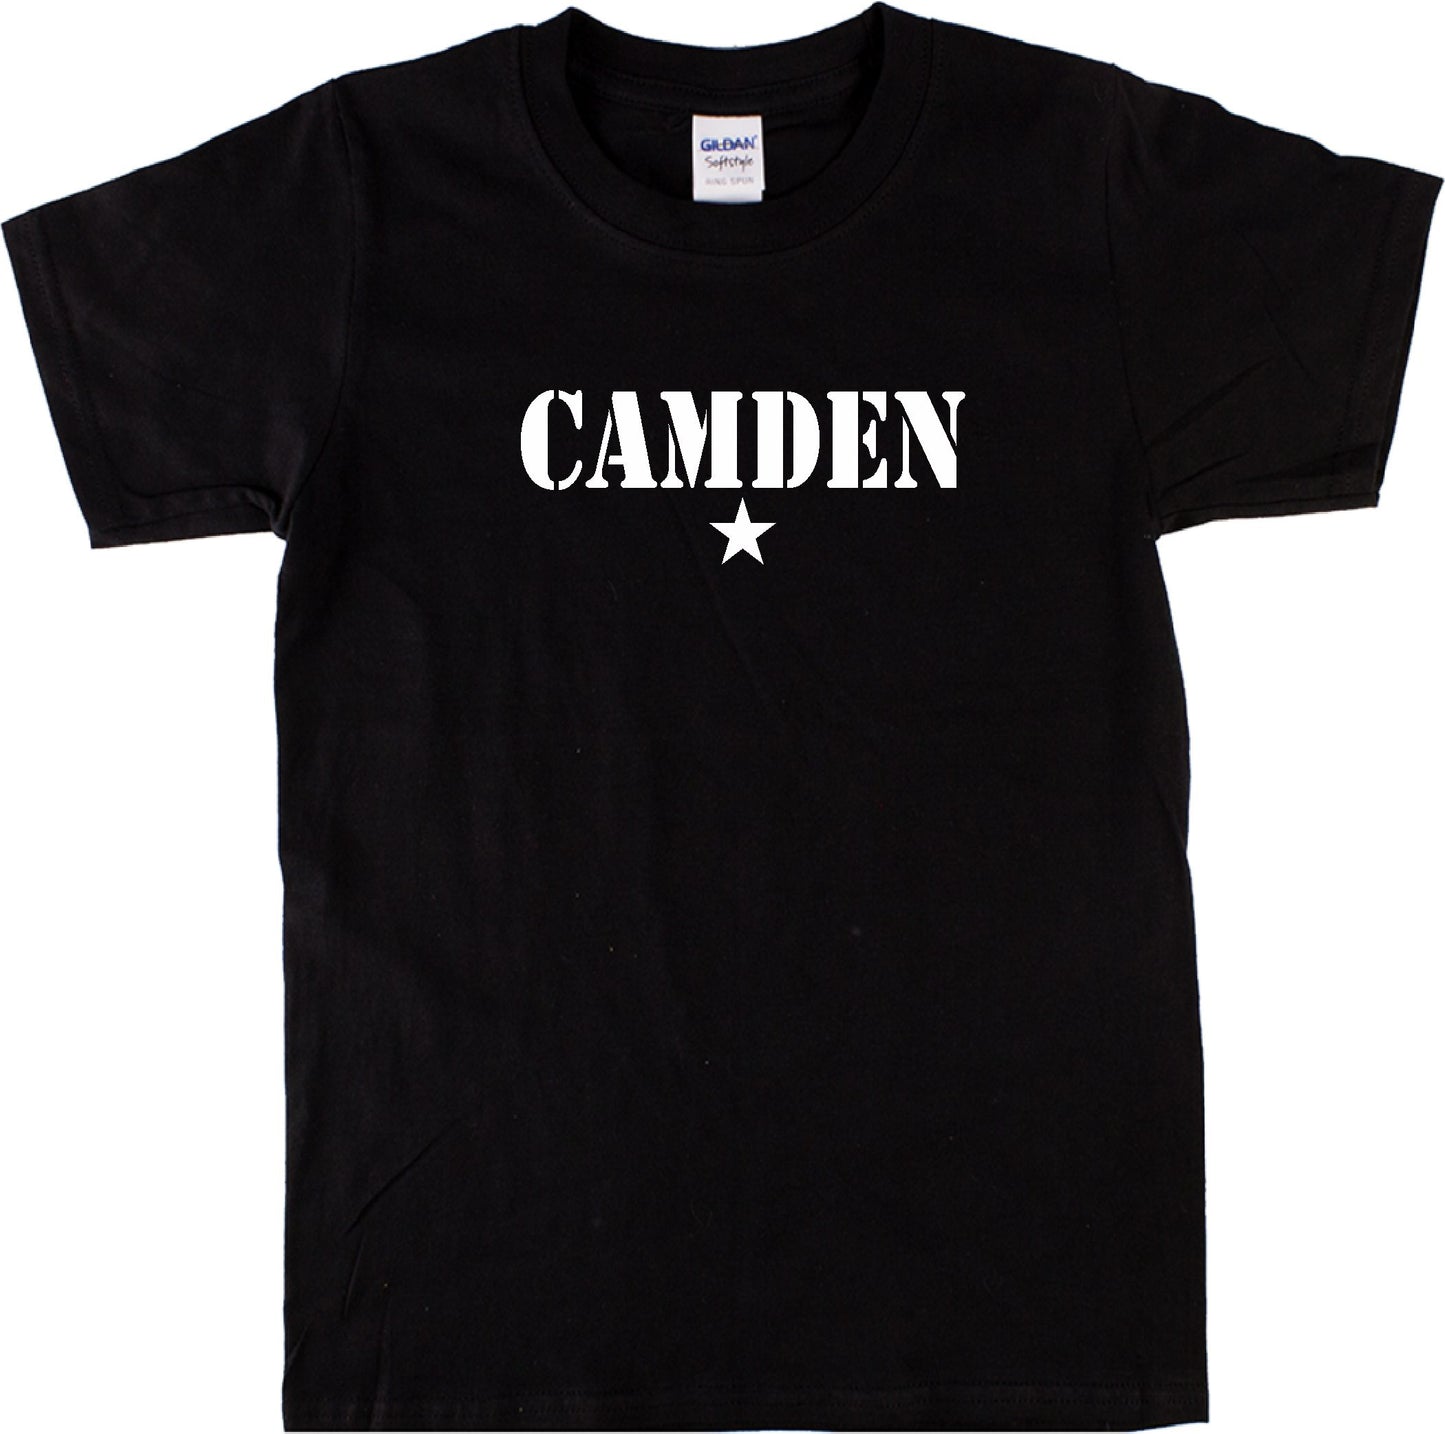 Camden Star T-Shirt - London Souvenir, Camden Town, Punk Rock, Alternative, Various Colours